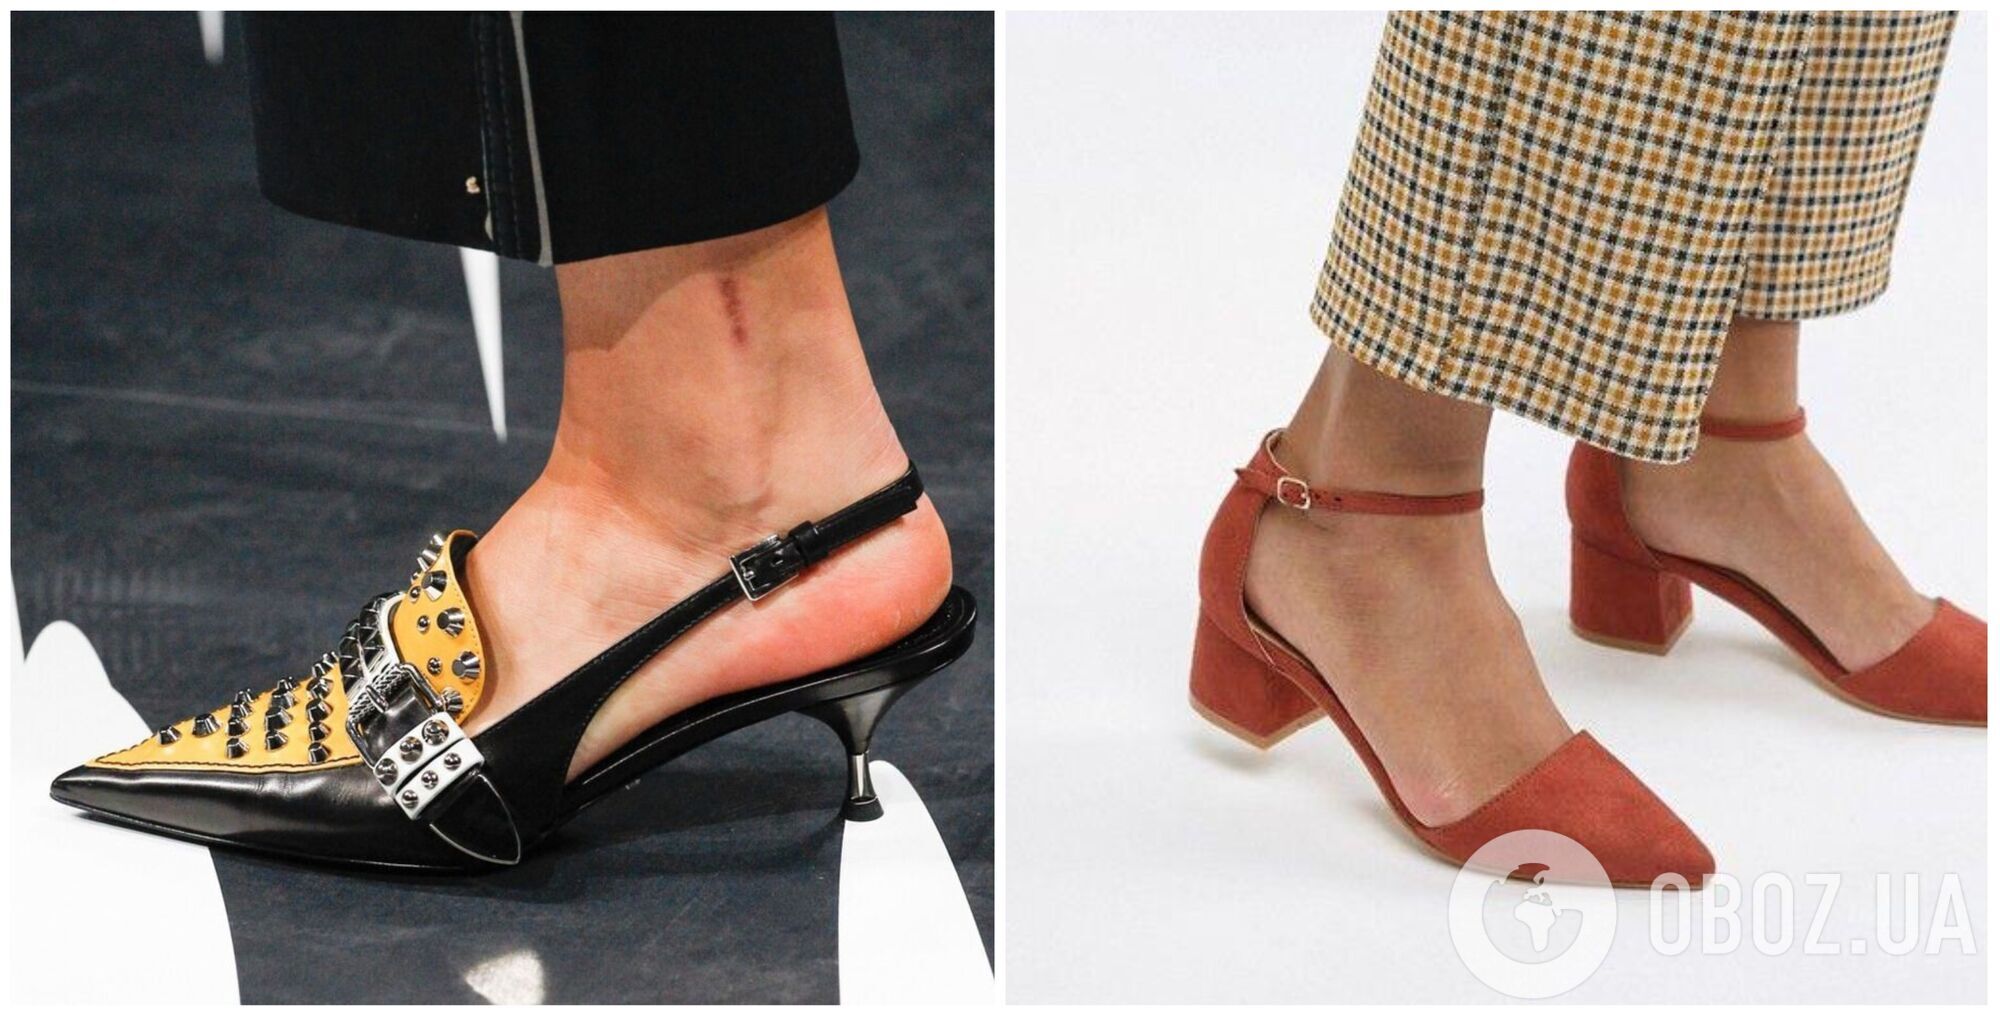 Такие туфли на невысоком трехсантиметровом каблучке создадут романтичный образ и добавят женственности.